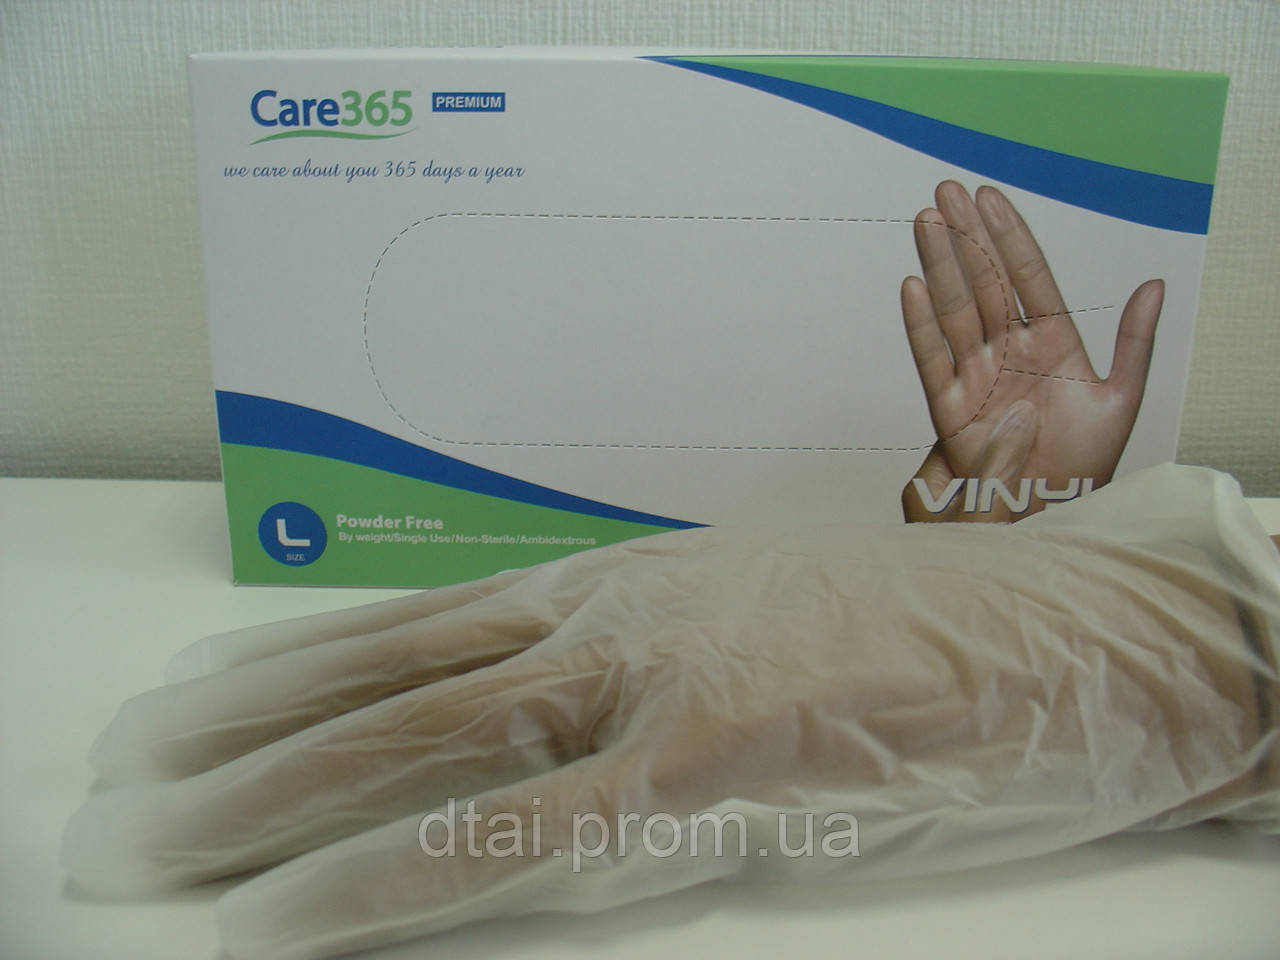 Рукавички вінілові одноразові Care365 Premium, 100 шт/упак